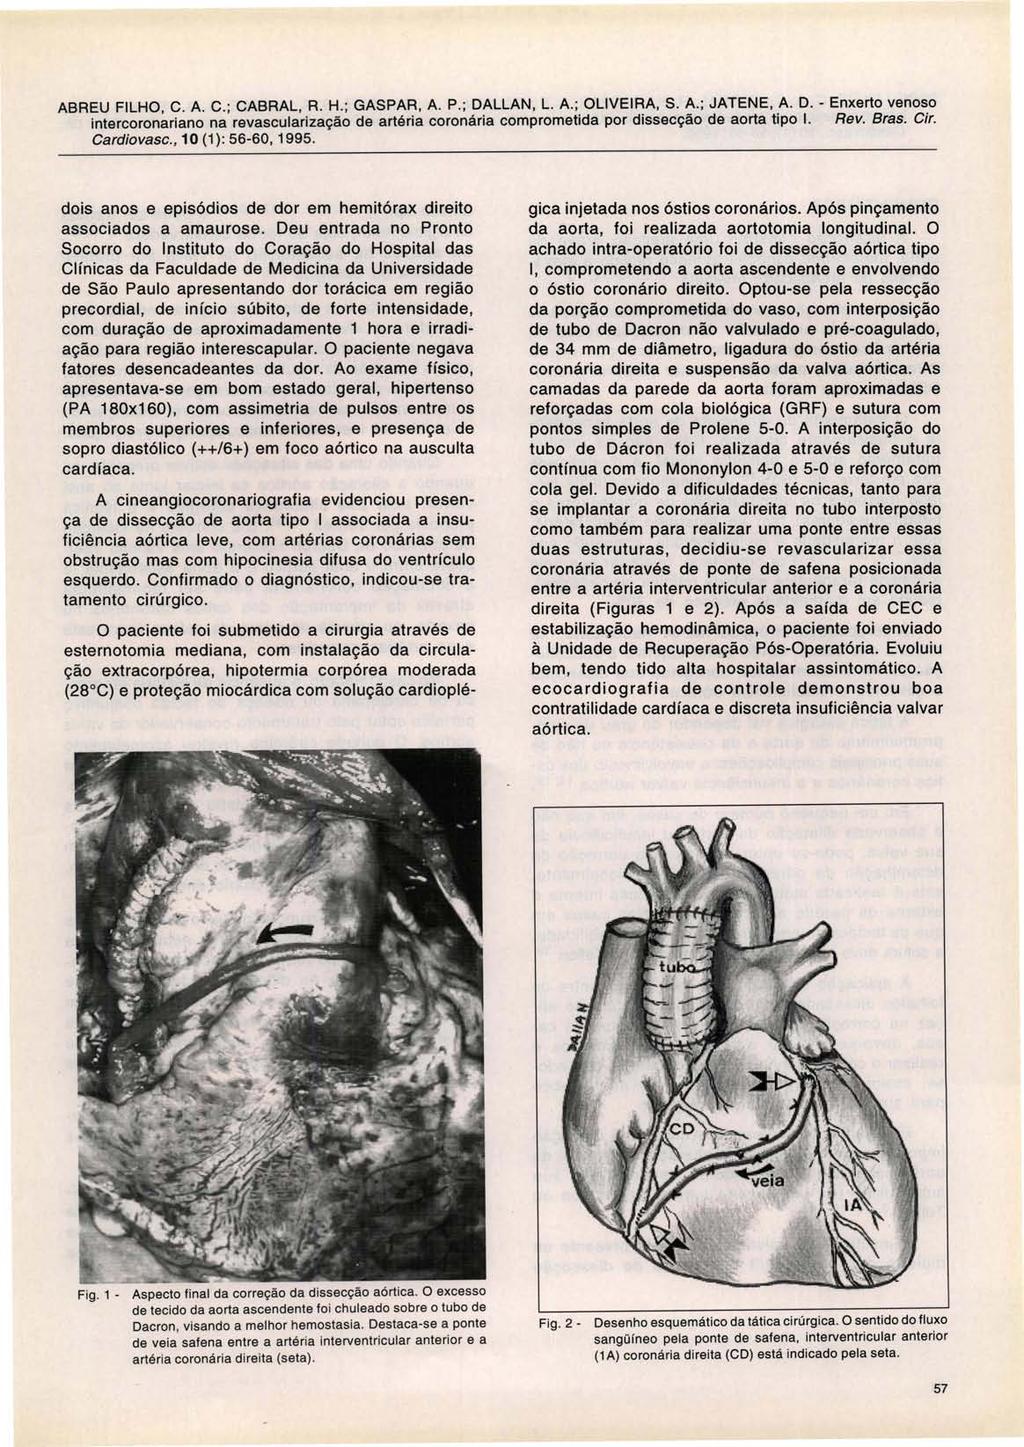 Cardiovasc., 10 (1) : 56-60, 1995. dois anos e episódios de dor em hemitórax direito associados a amaurose.